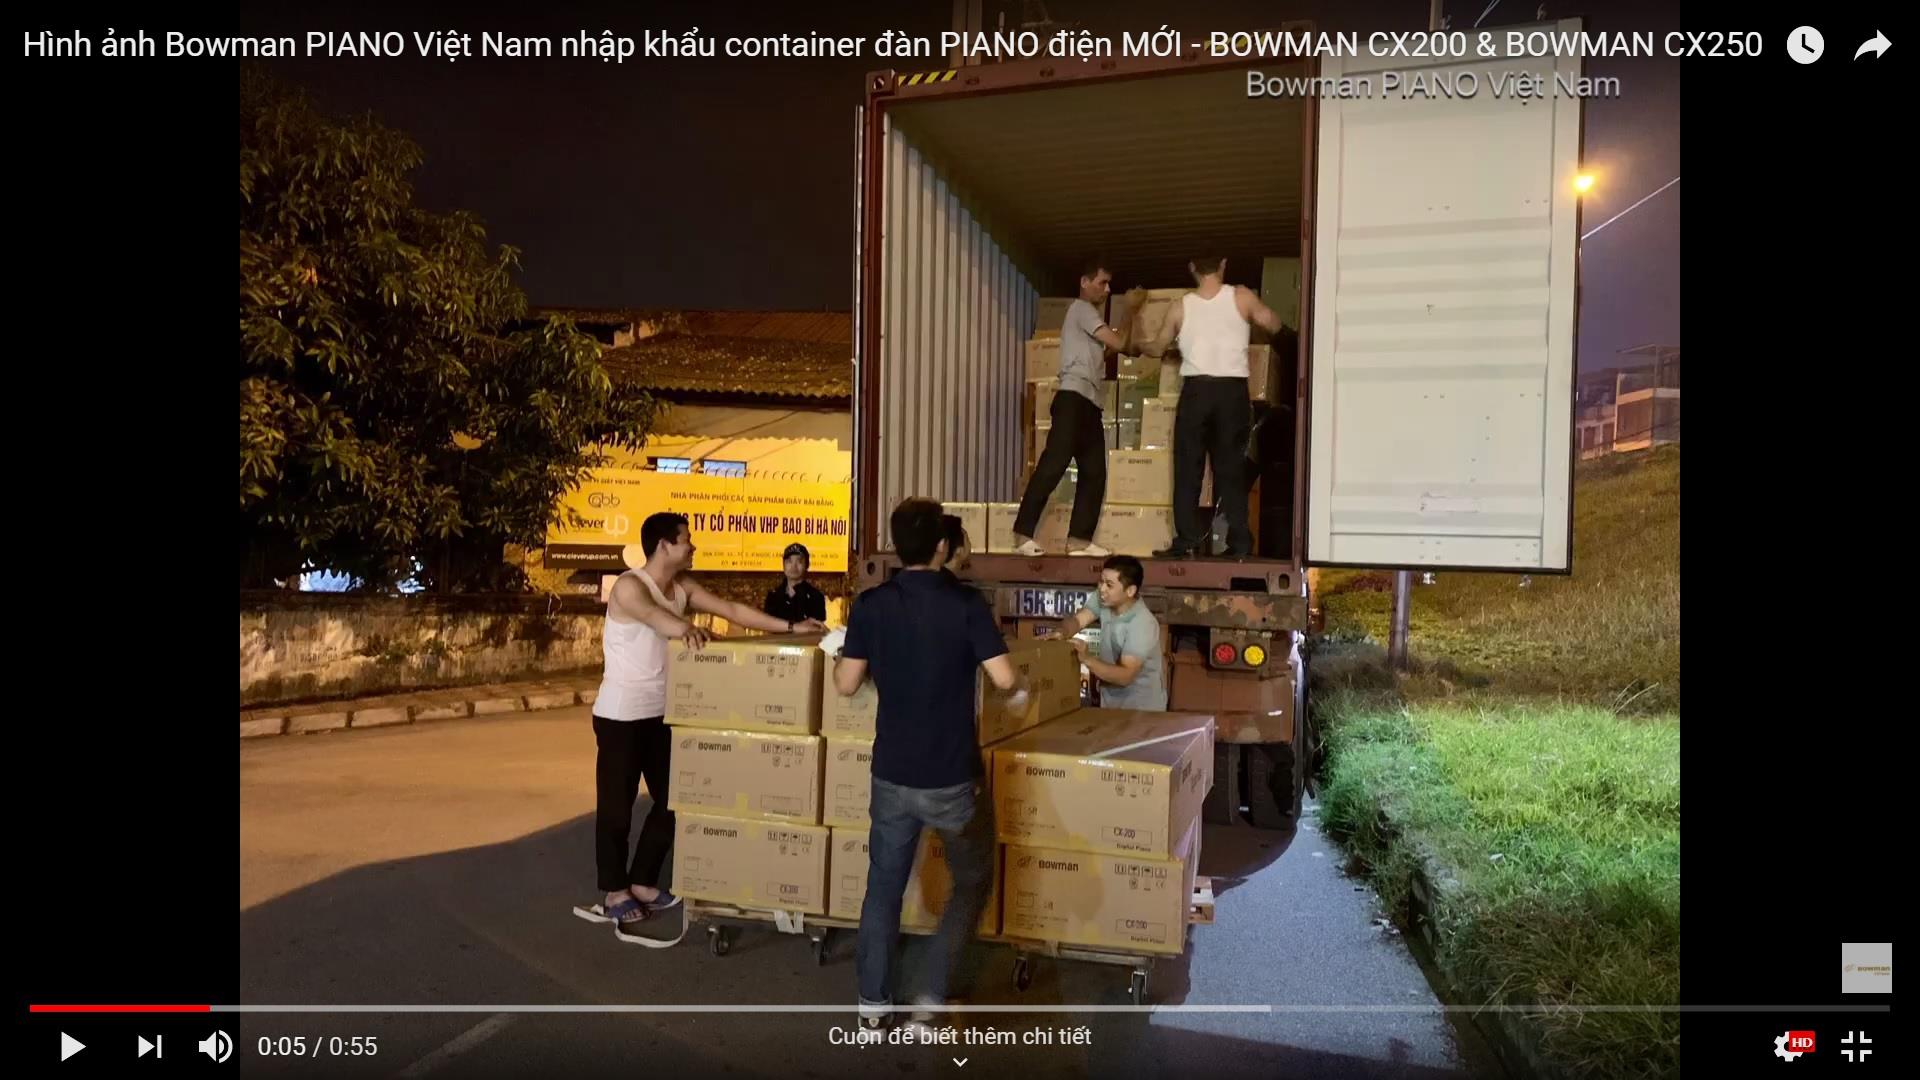 Hình ảnh Bowman PIANO Việt Nam nhập khẩu container đàn PIANO điện MỚI - BOWMAN CX200 & BOWMAN CX250